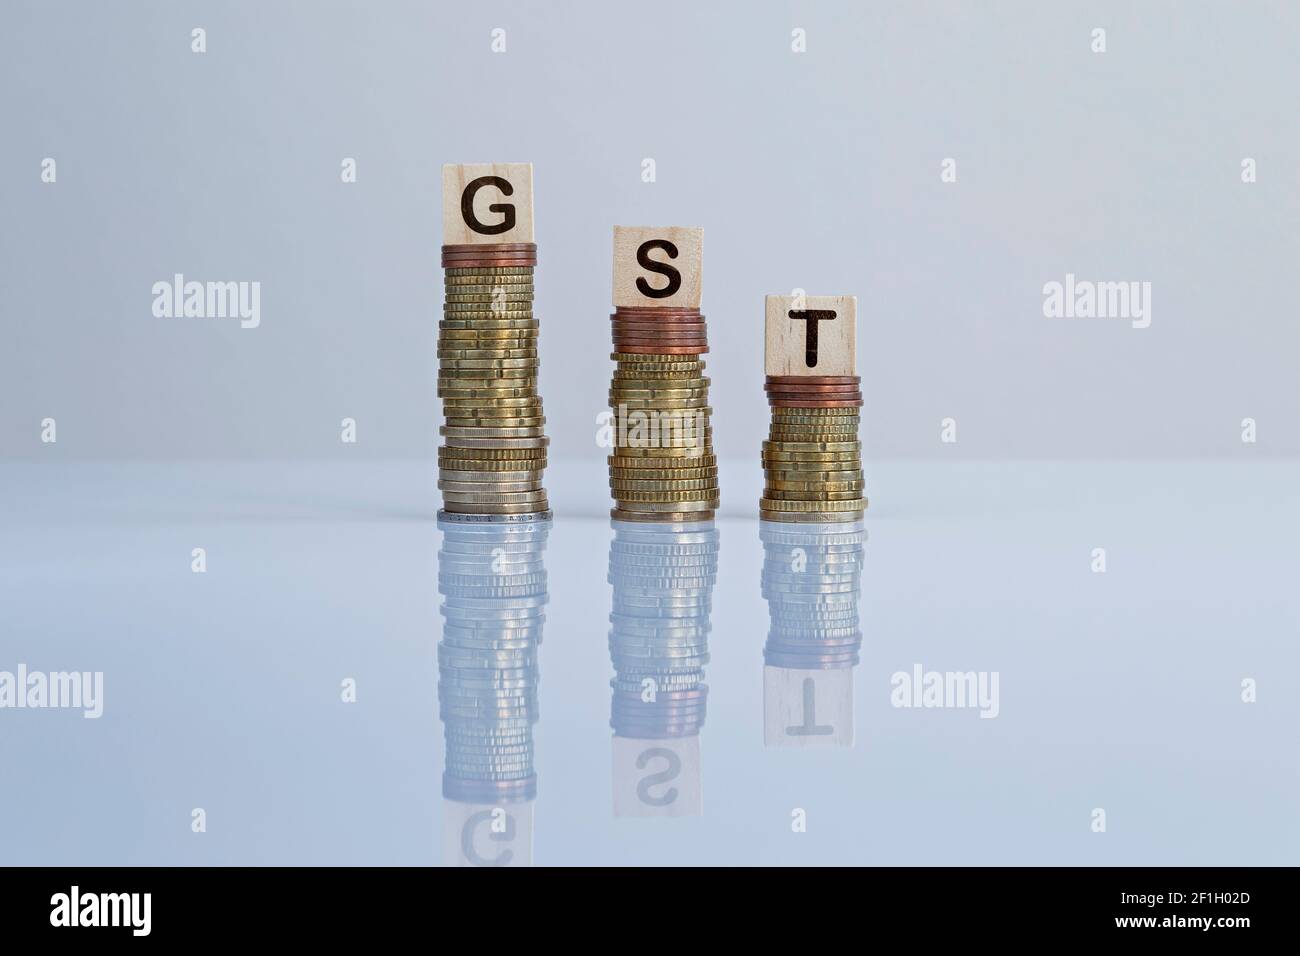 Parola 'GST' su blocchi di legno in cima a pile discendenti di monete in grigio. Foto concettuale della riduzione dell'imposta sul valore aggiunto, dell'economia, delle imprese e della finanza Foto Stock